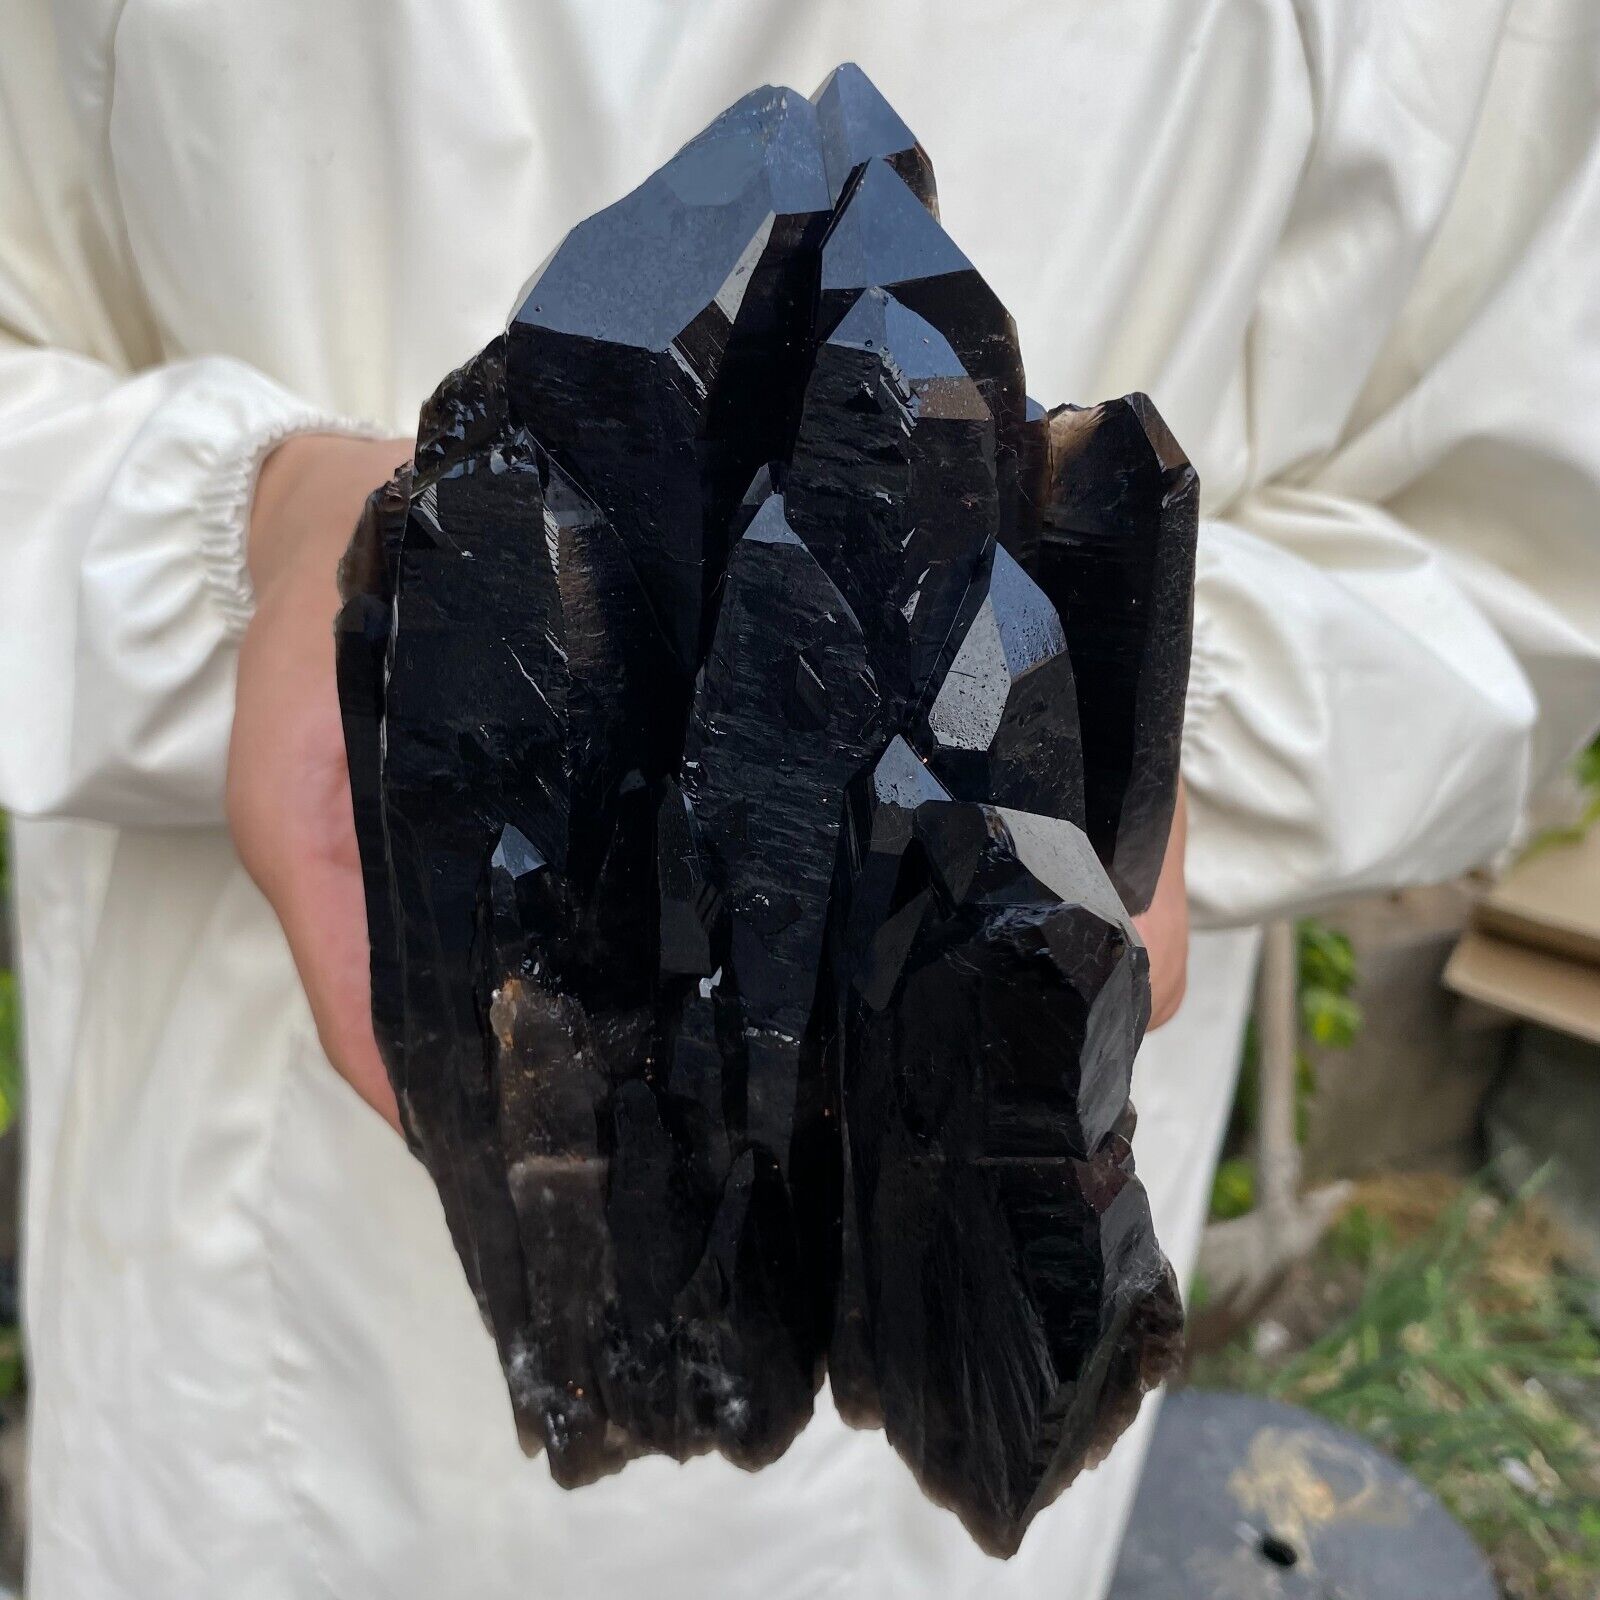 3.7lb Large Natural Black Smoky Quartz Crystal Cluster Rough Mineral Specimen